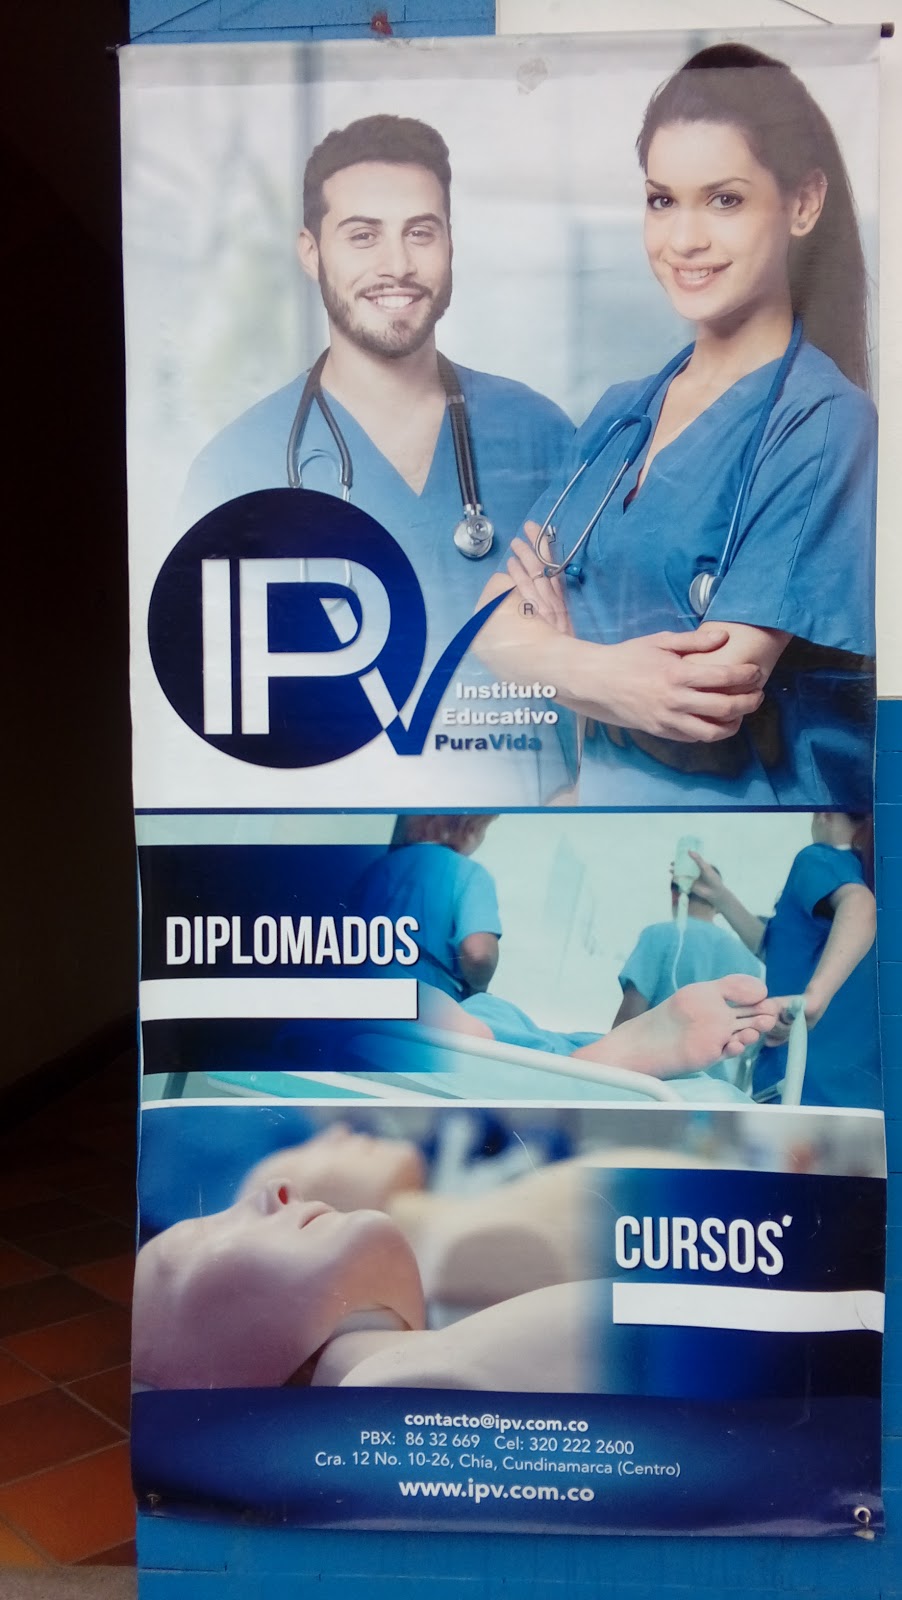 IPV - Instituto Educativo PuraVida